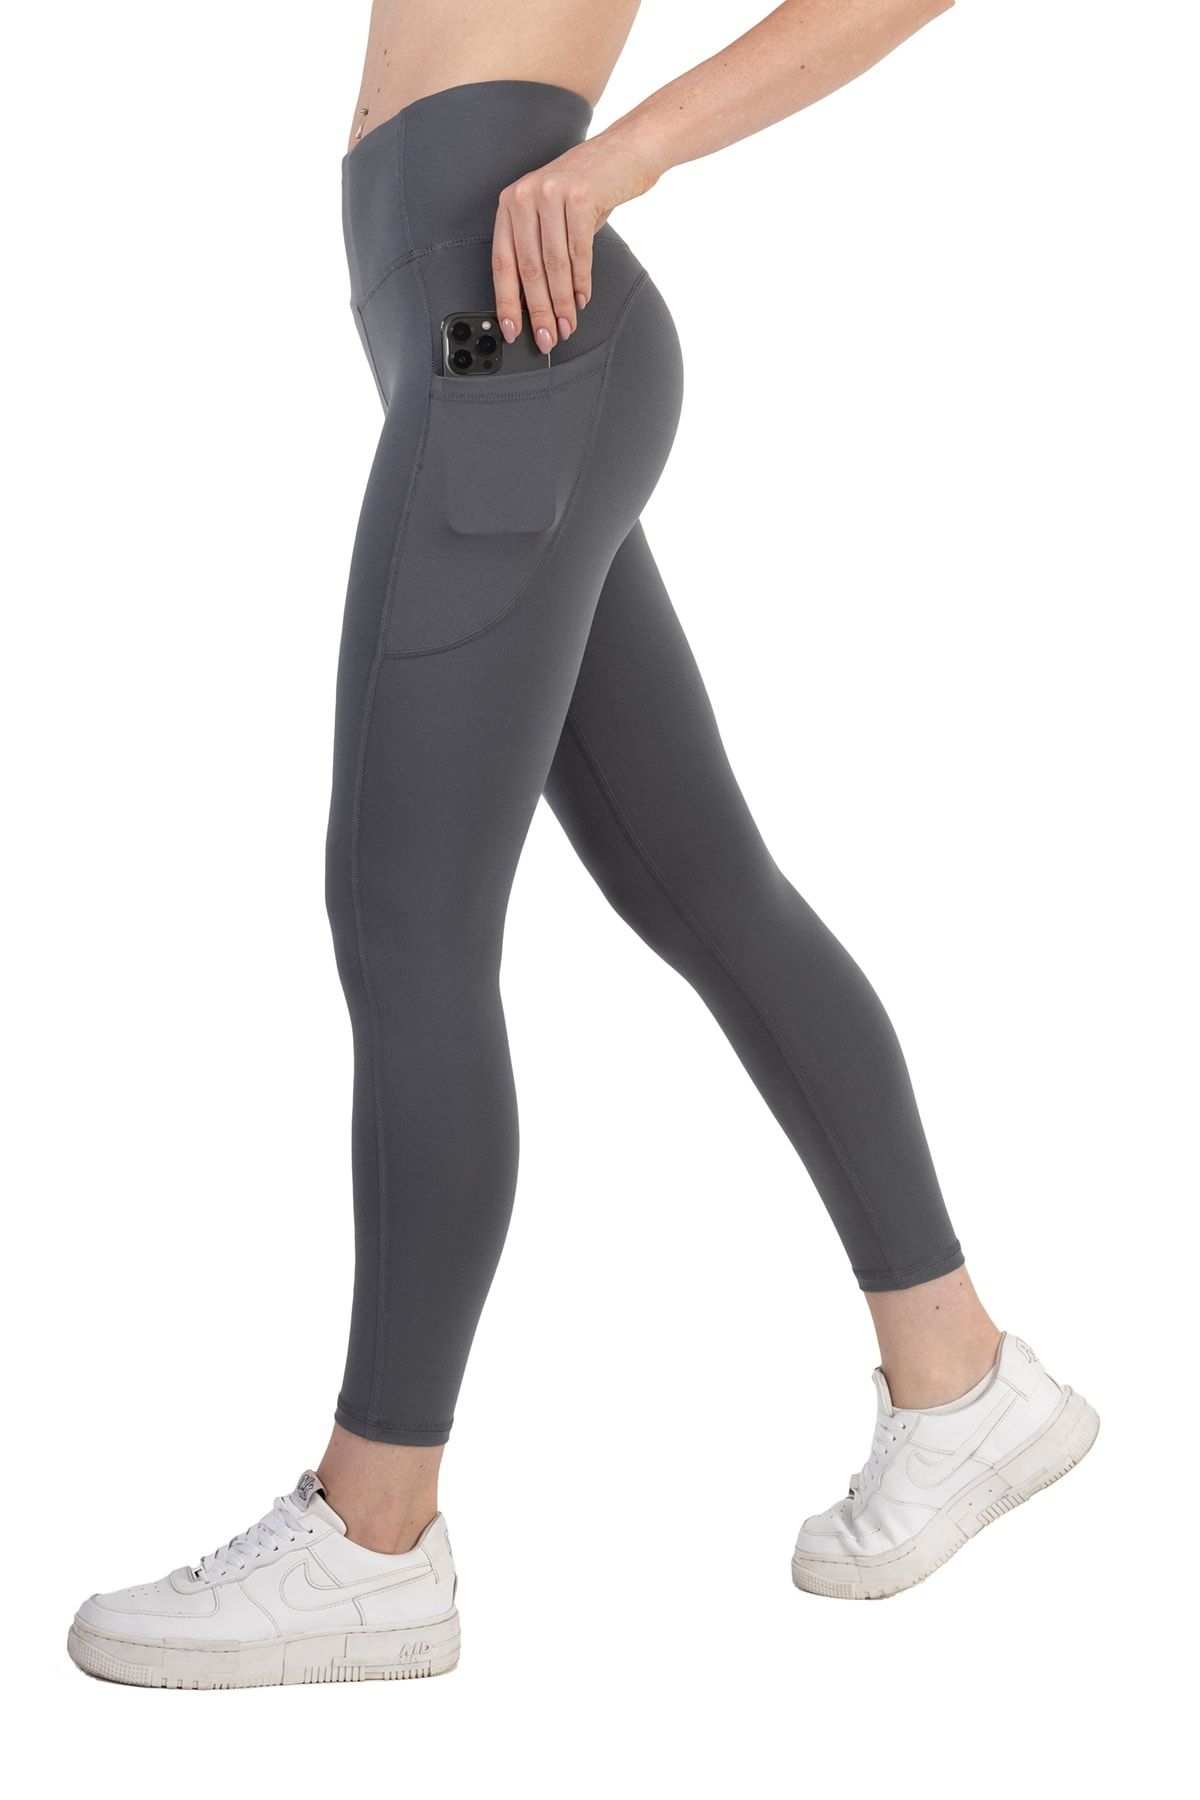 Novamour Ultra Yumuşak Yüksek Bel 3 Cepli Toparlayıcı Push Up Iç Göstermez Egzersiz Yoga Kadın Taytı